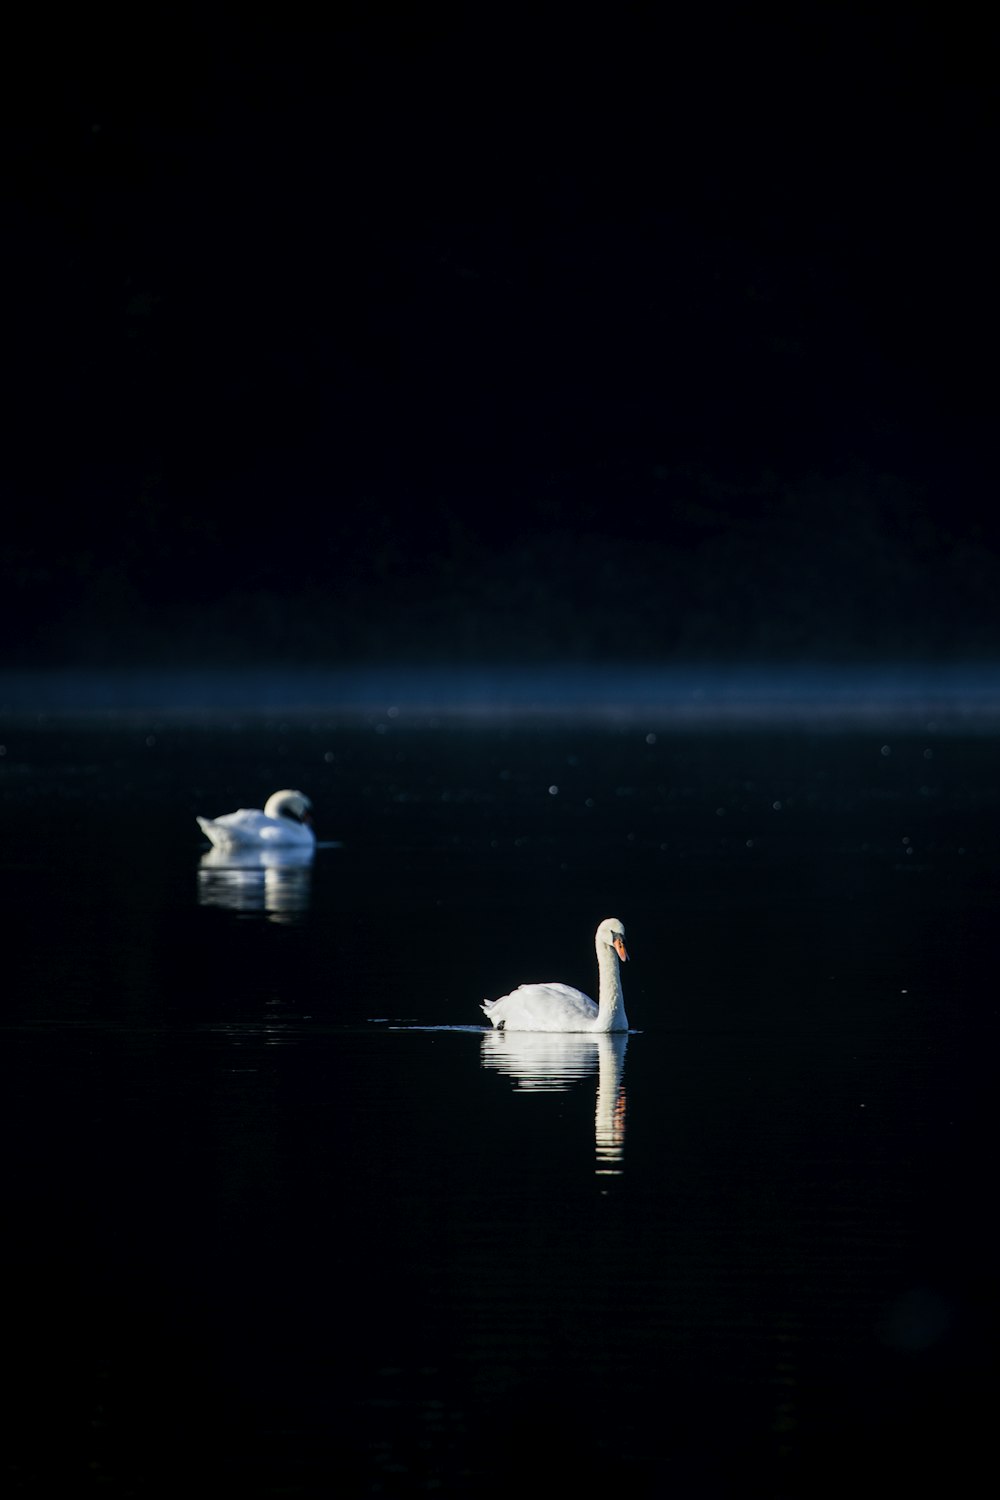 deux cygnes blancs sur l’eau